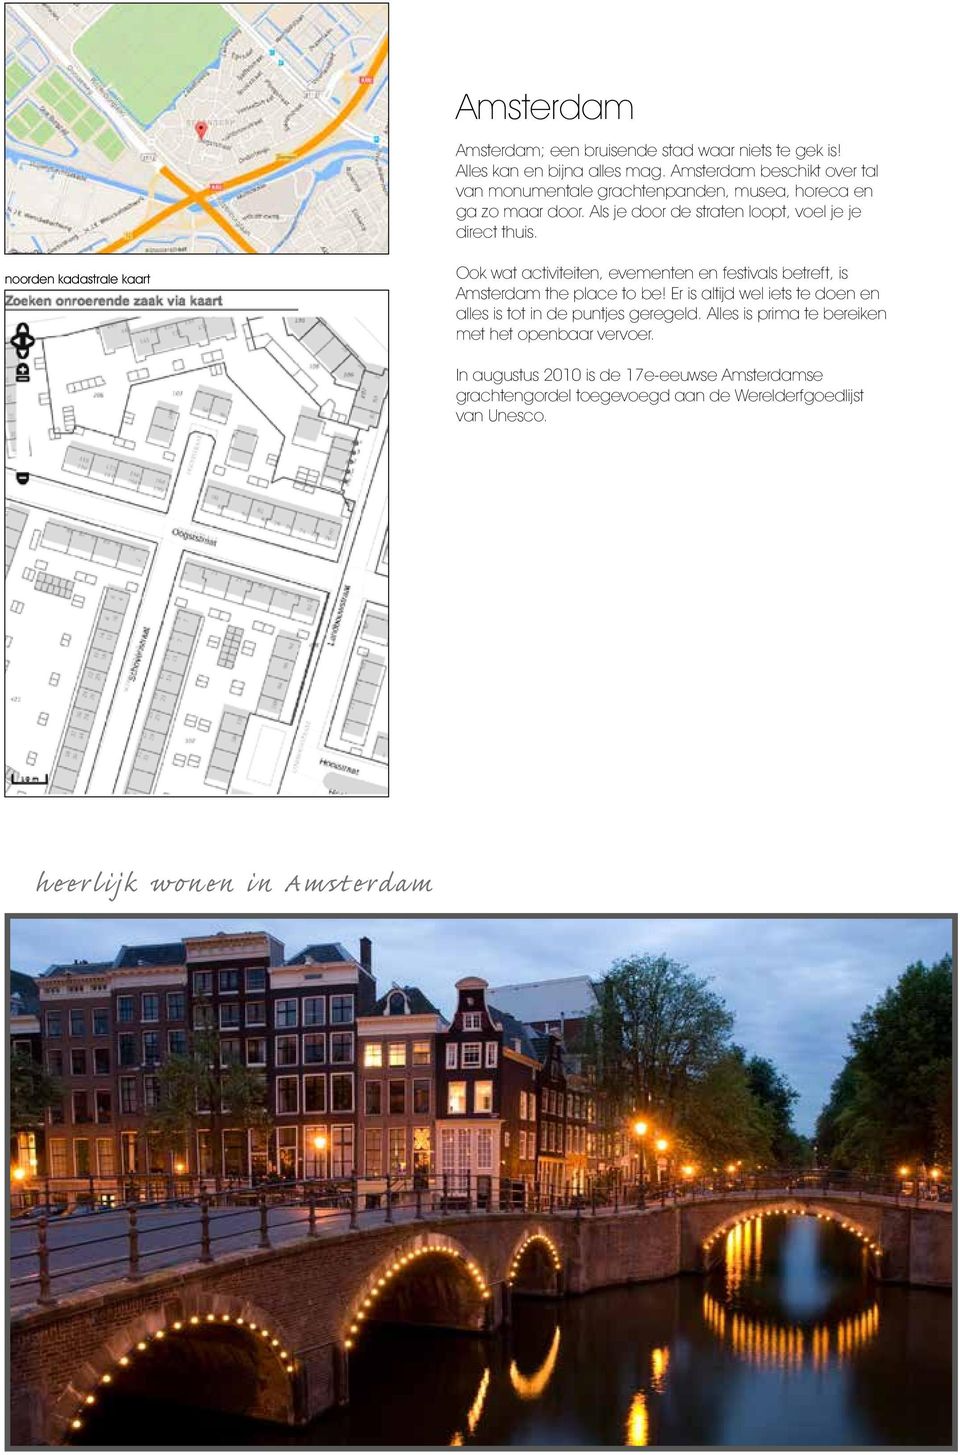 noorden kadastrale kaart Ook wat activiteiten, evementen en festivals betreft, is Amsterdam the place to be!